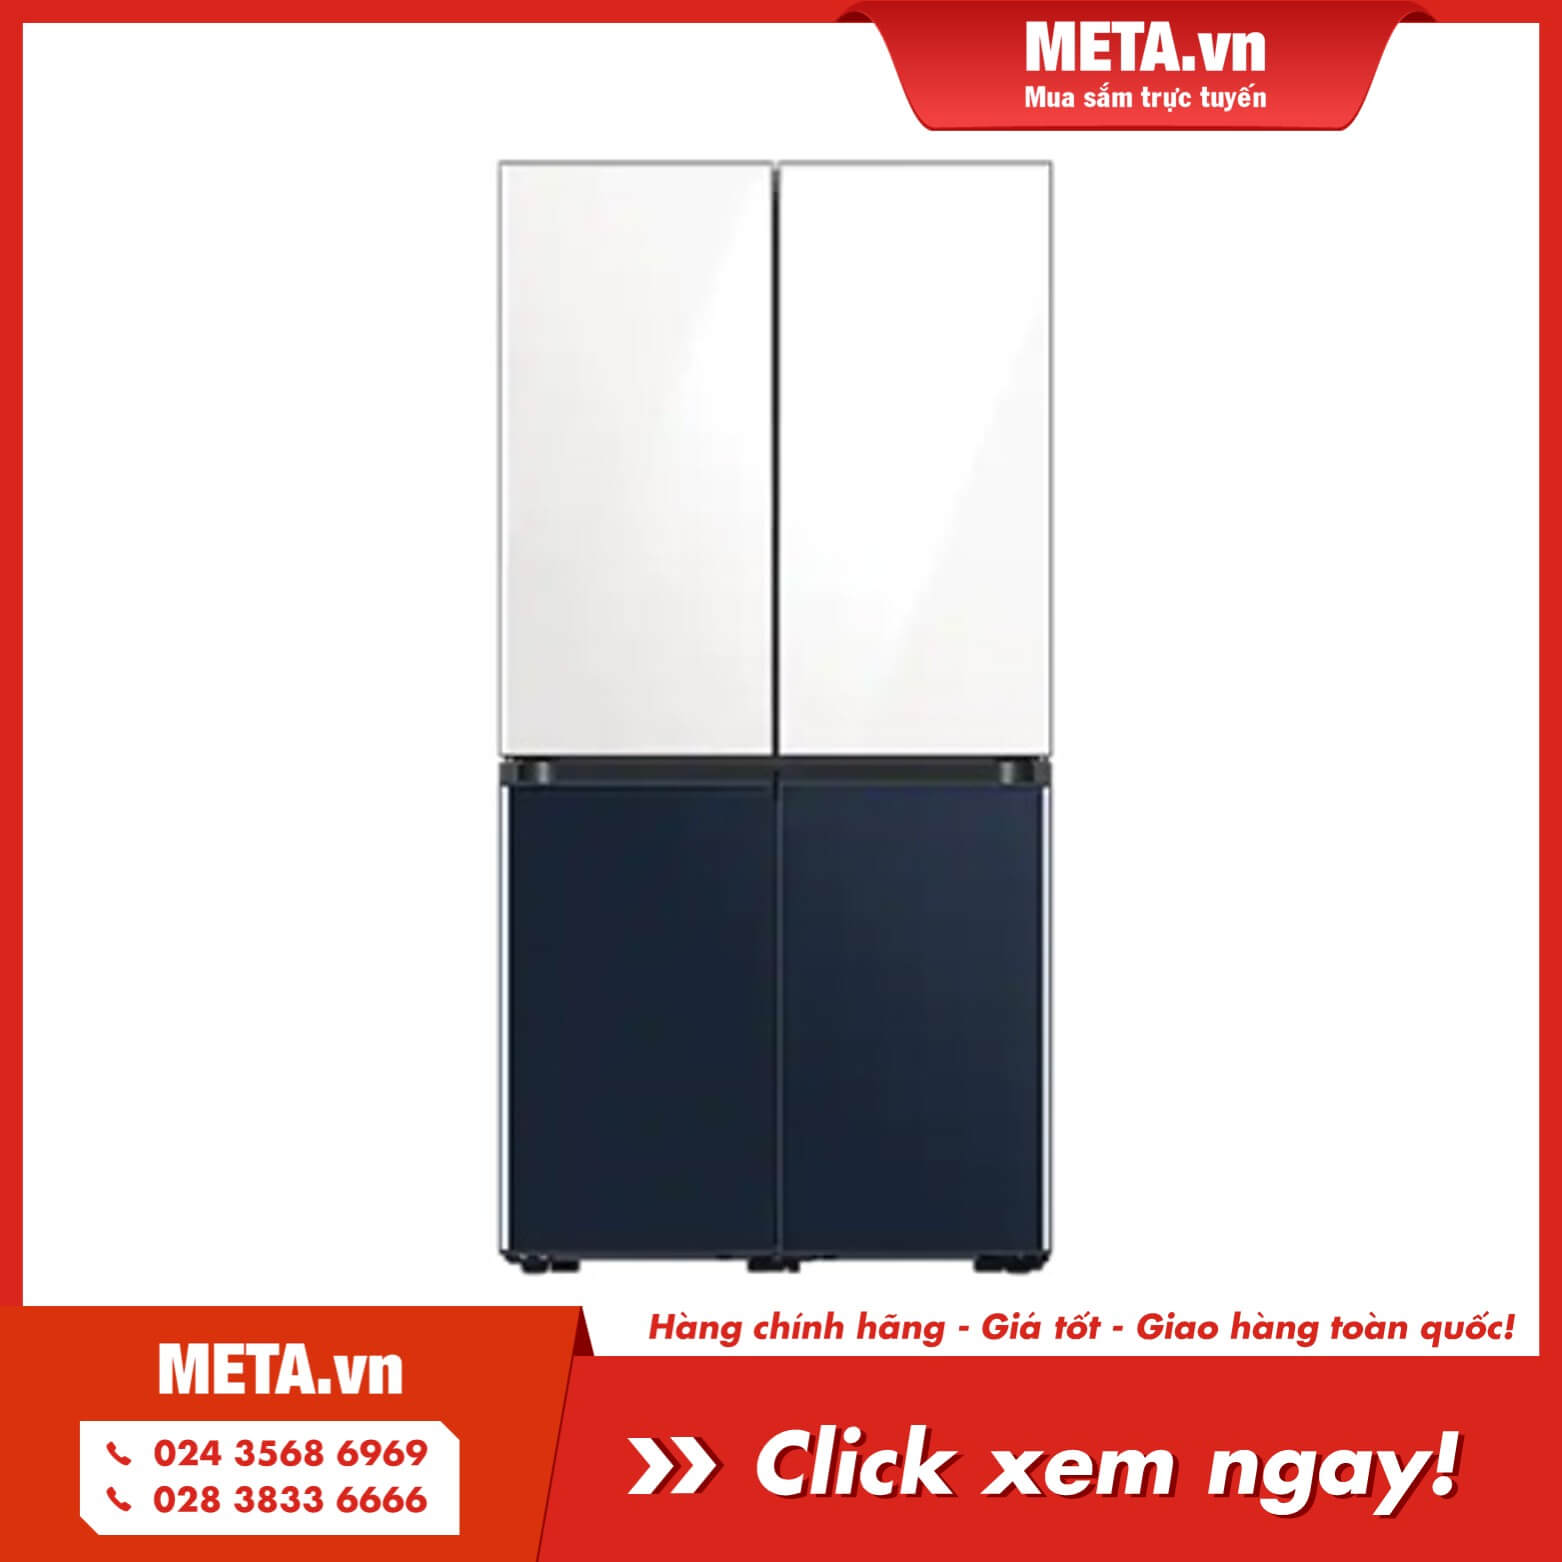 Tủ lạnh Samsung Bespoke multidoor 599 lít RF60A91R177/SV (2 màu trắng và xanh navy)